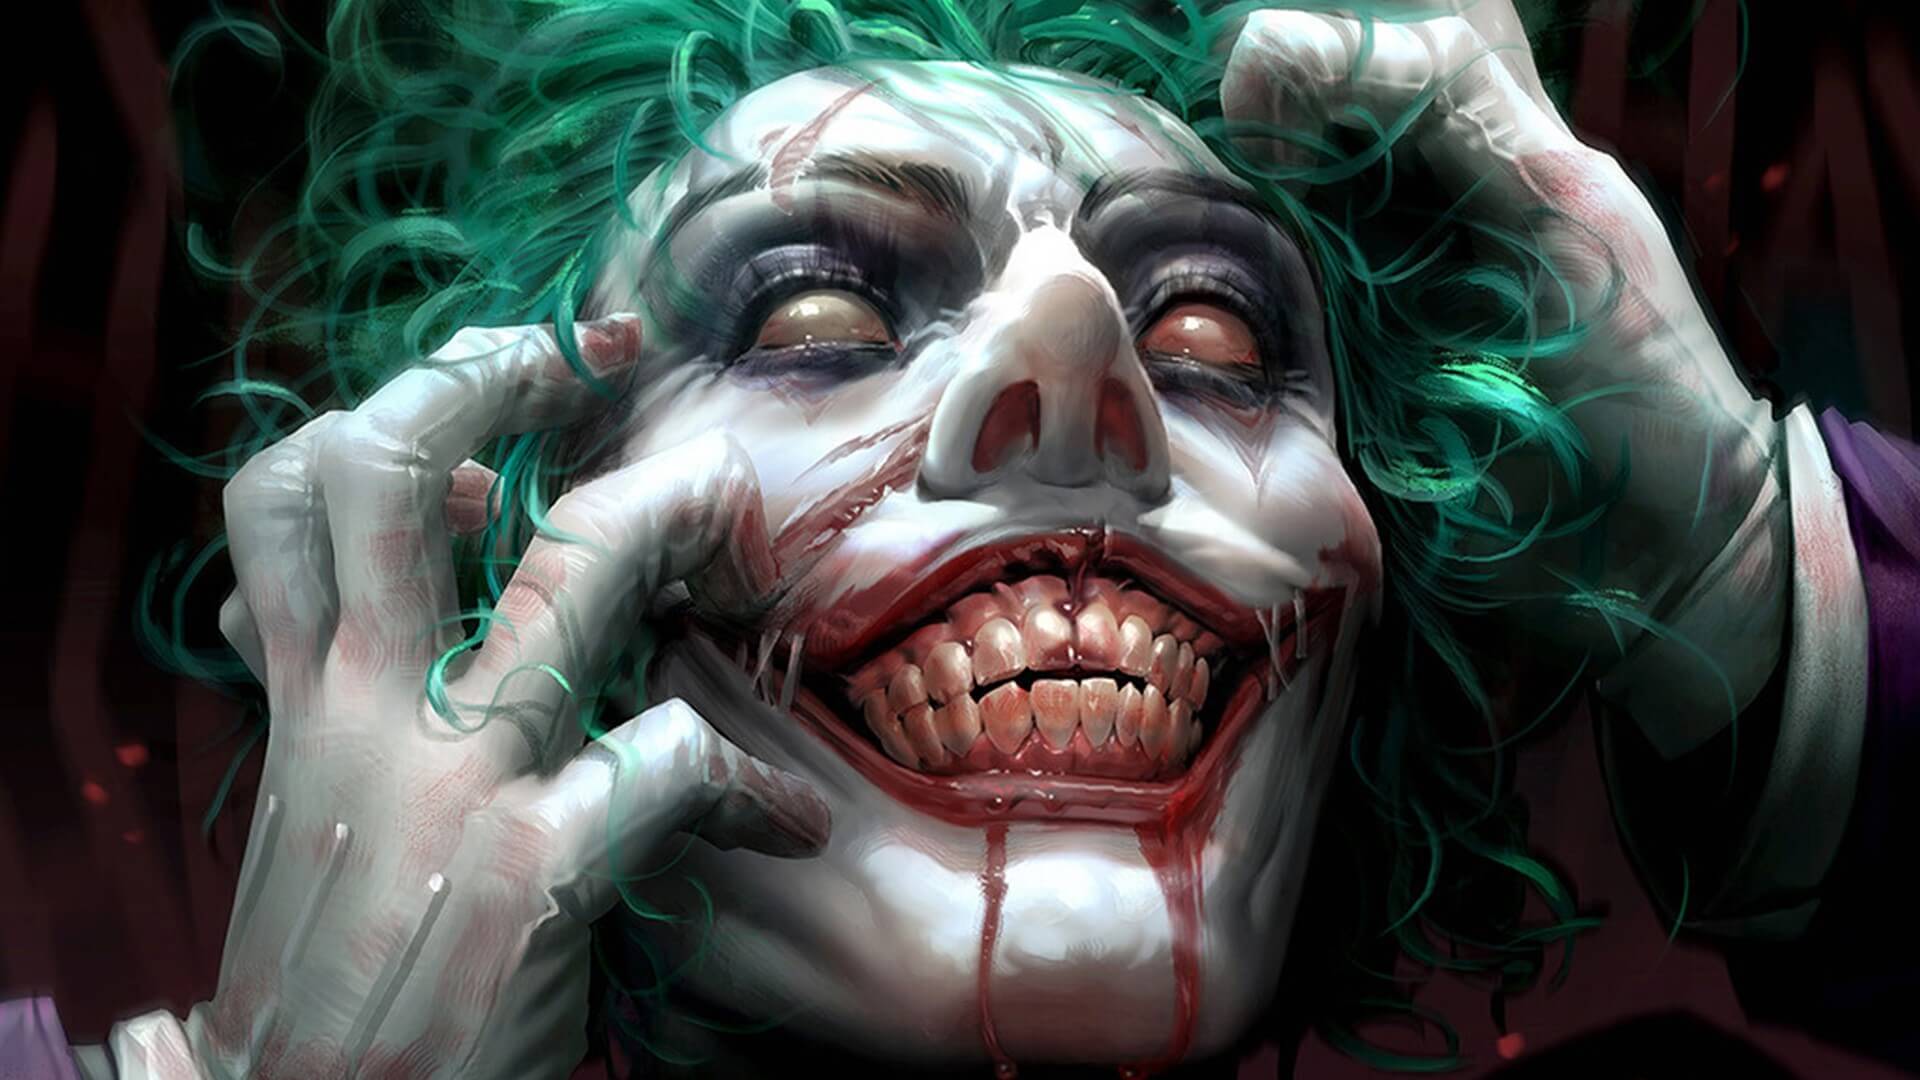 Hình nền Joker: Tận hưởng không khí căng thẳng của Gotham với hình nền Joker đầy mê hoặc. Hình ảnh chất lượng cao sẽ khiến bạn bị cuốn hút bởi sự độc đáo của nhân vật. Hãy thưởng thức hình nền này và cảm nhận sự mạnh mẽ và bí ẩn của Joker.